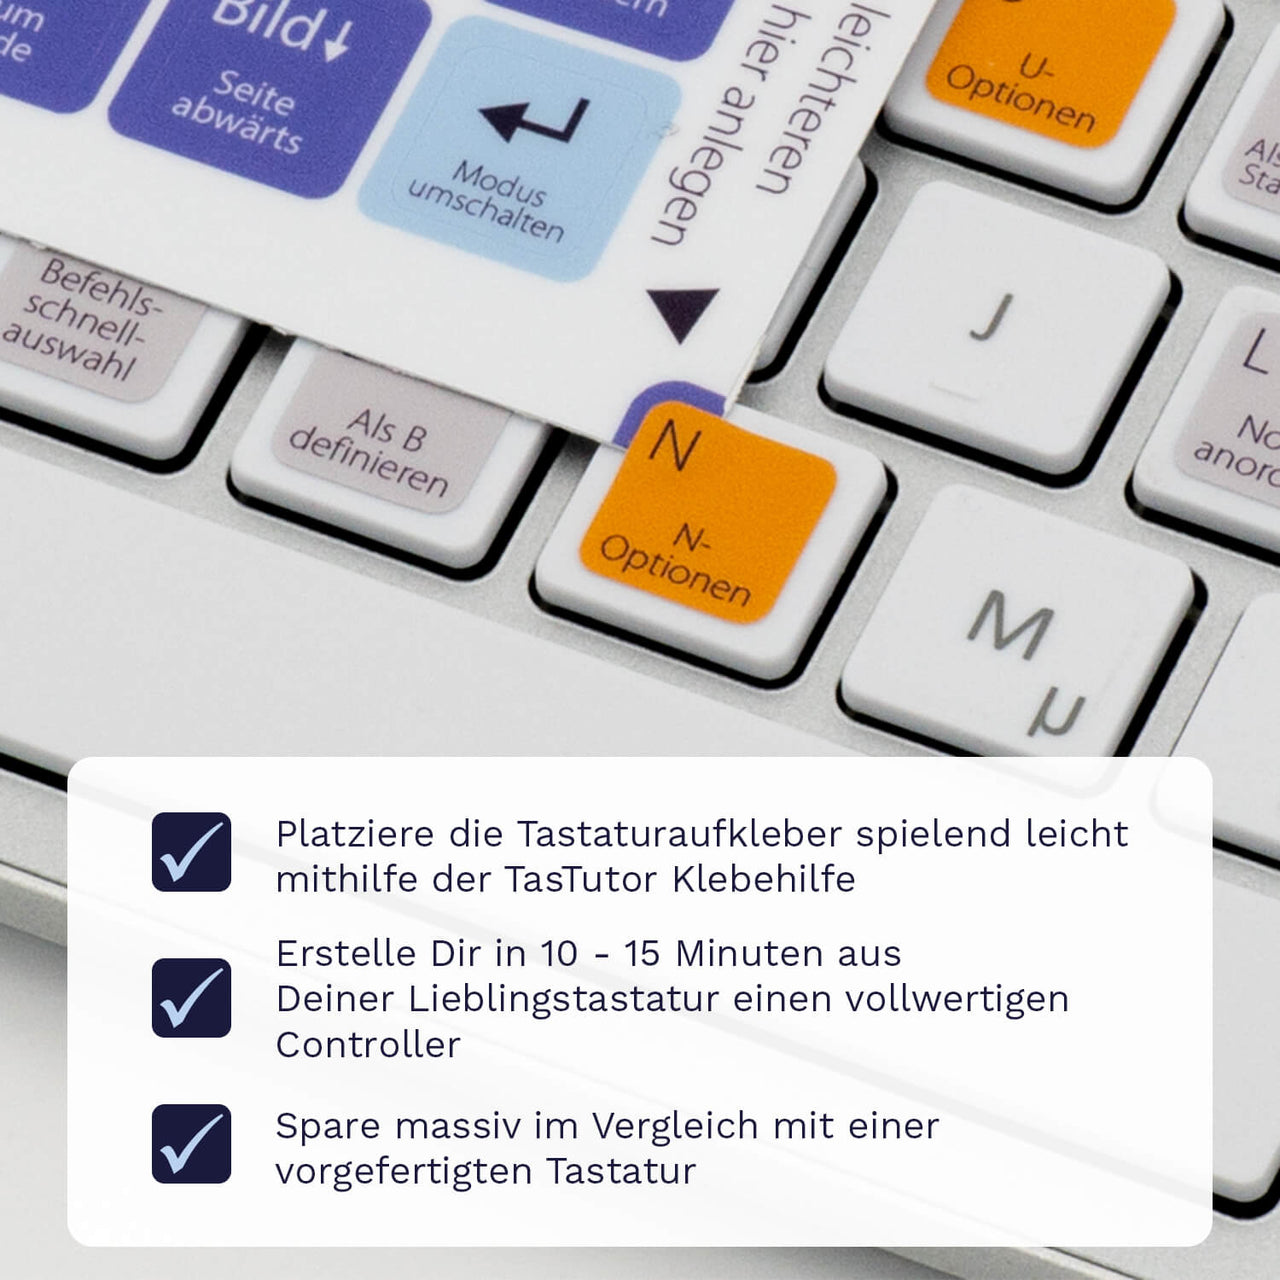 Cinema 4D Tastaturaufkleber Klebehilfe für PC/MAC mit deutschen Shortcuts/Tastaturbefehlen/Tastaturkürzeln | TasTutor